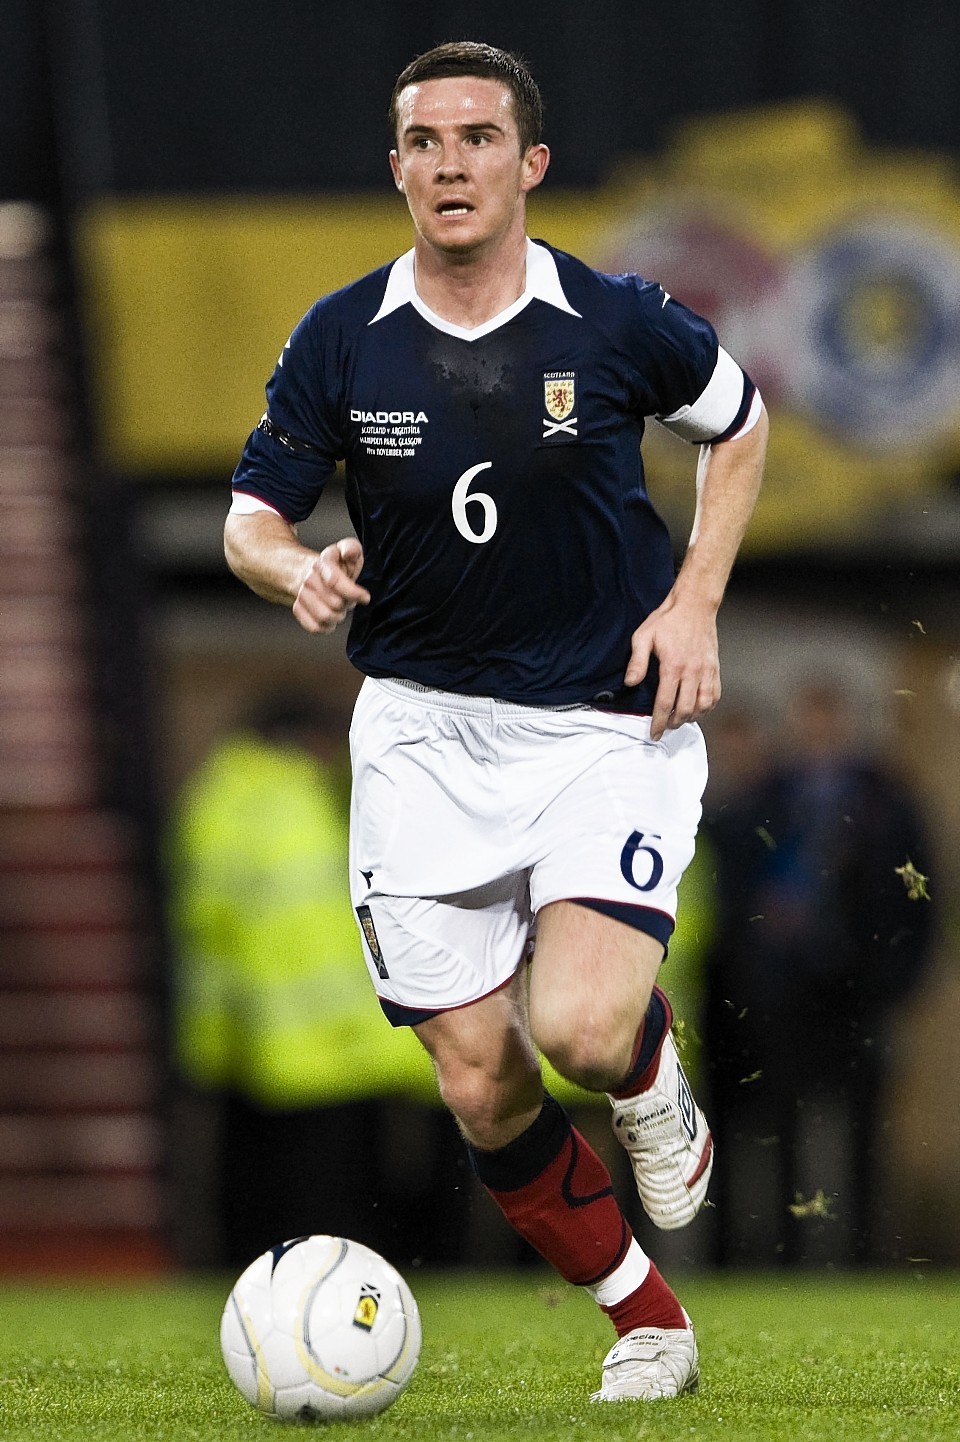 Ferguson captained Scotland until 2009 